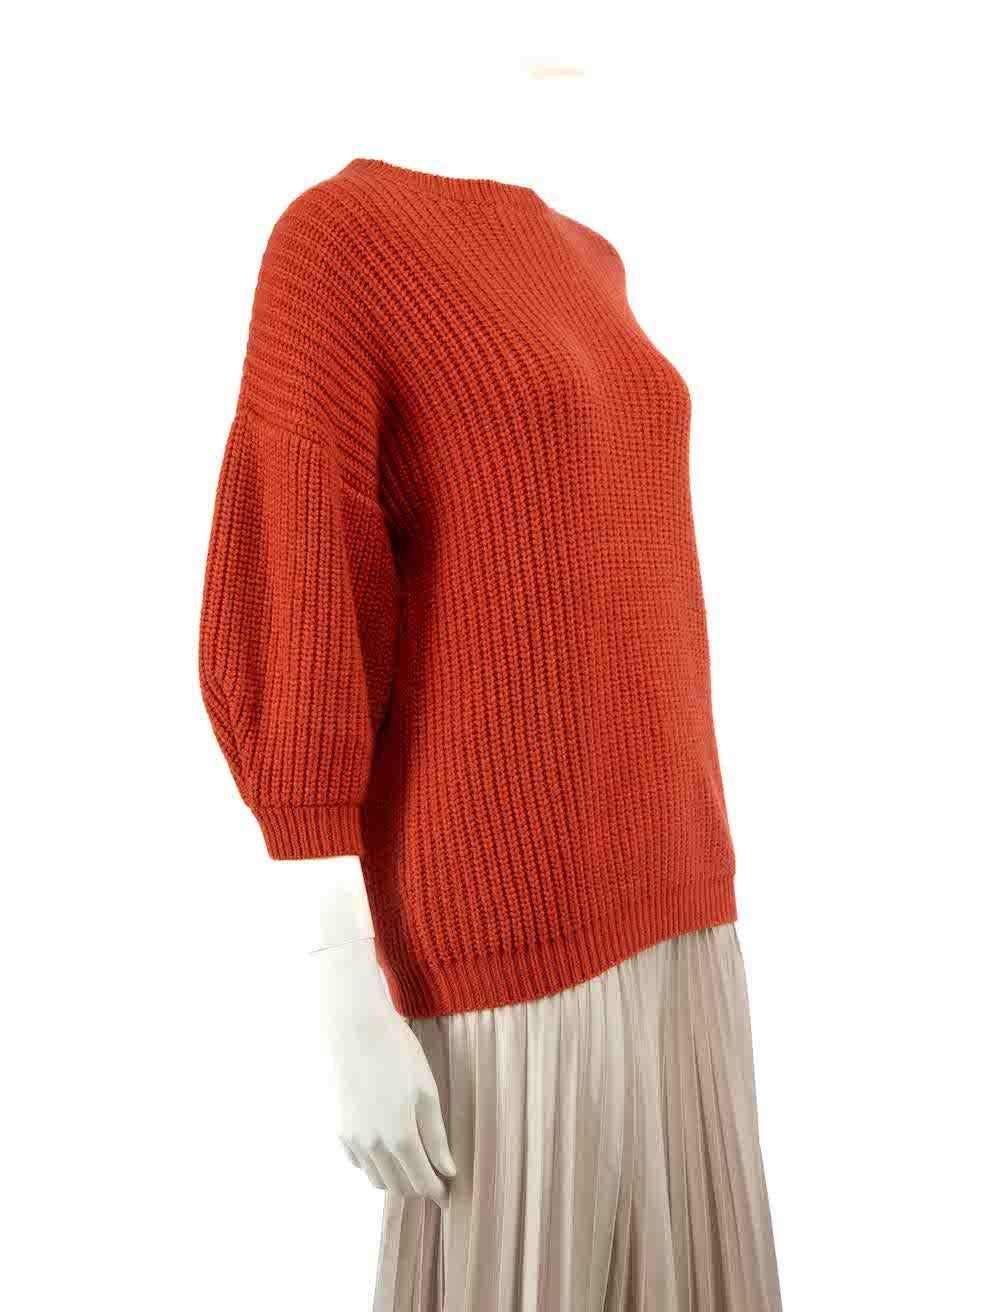 CONDIT ist sehr gut. Kaum sichtbare Abnutzungserscheinungen am Pullover sind bei diesem gebrauchten Brunello Cucinelli Designer-Wiederverkaufsartikel zu erkennen.
 
 
 
 Einzelheiten
 
 
 Orange
 
 Kaschmir
 
 Oberteil mit mittleren Ärmeln
 
